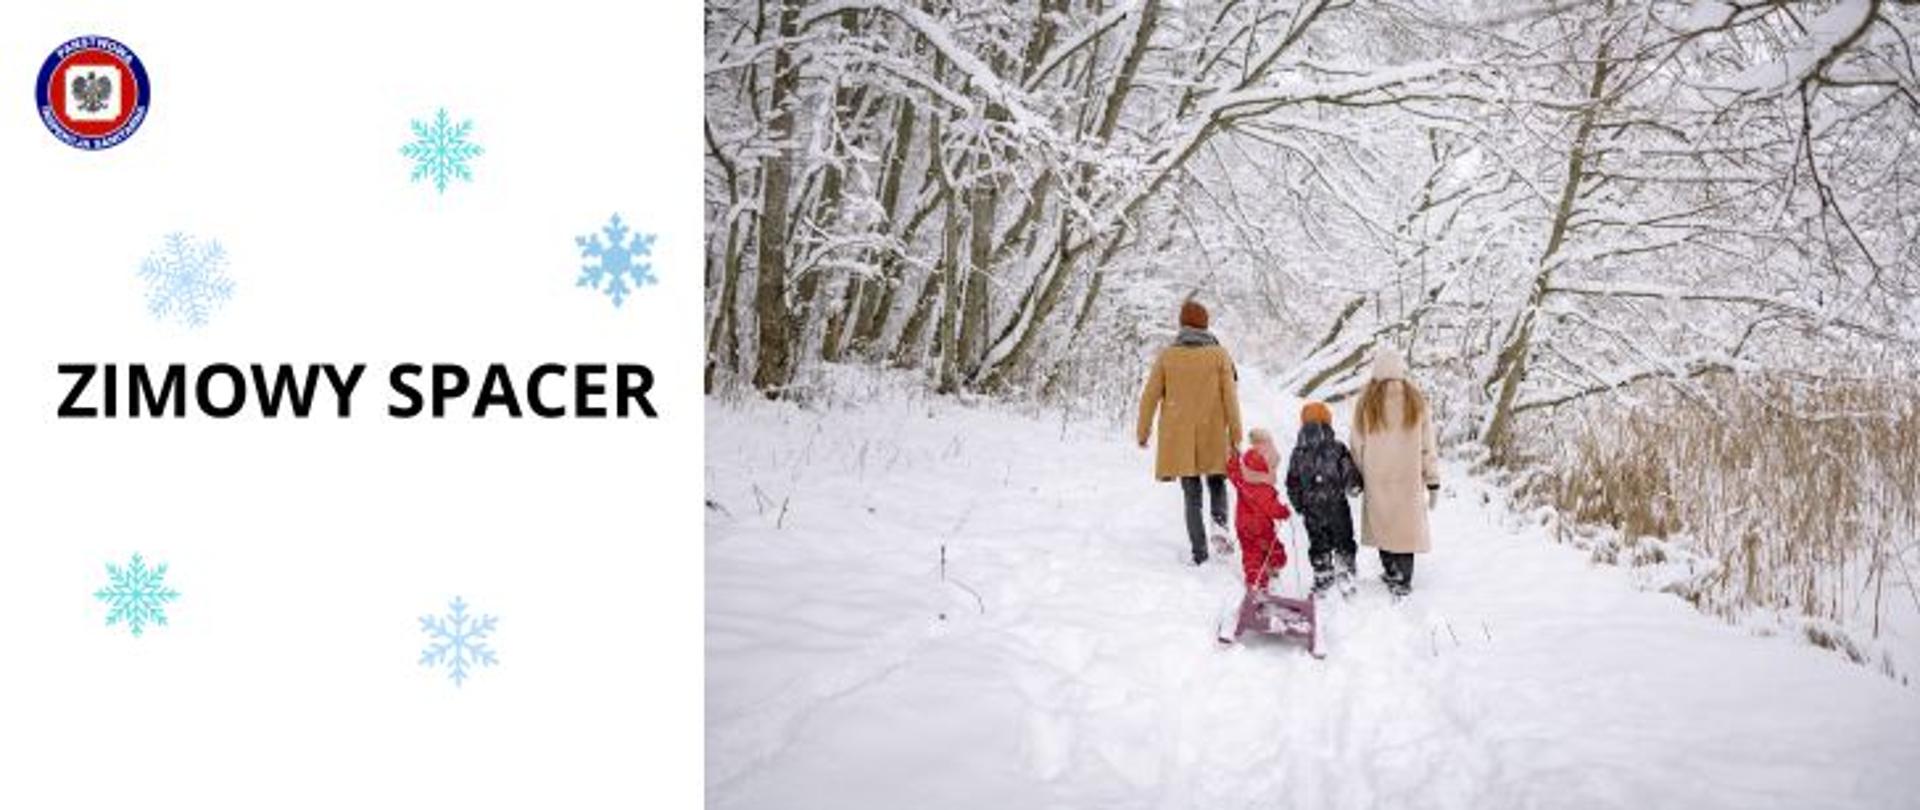 Po prawej stronie rodzina idzie na zimowy spacer w lesie, widać ich plecy, wokół pełno śniegu, najmłodsze dziecko ciągnie sanki, z lewej ciemny napis na jasnym tle ze śnieżynkami - Zimowy spacer. W lewym górnym rogu logo Państwowej Inspekcji Sanitarnej.